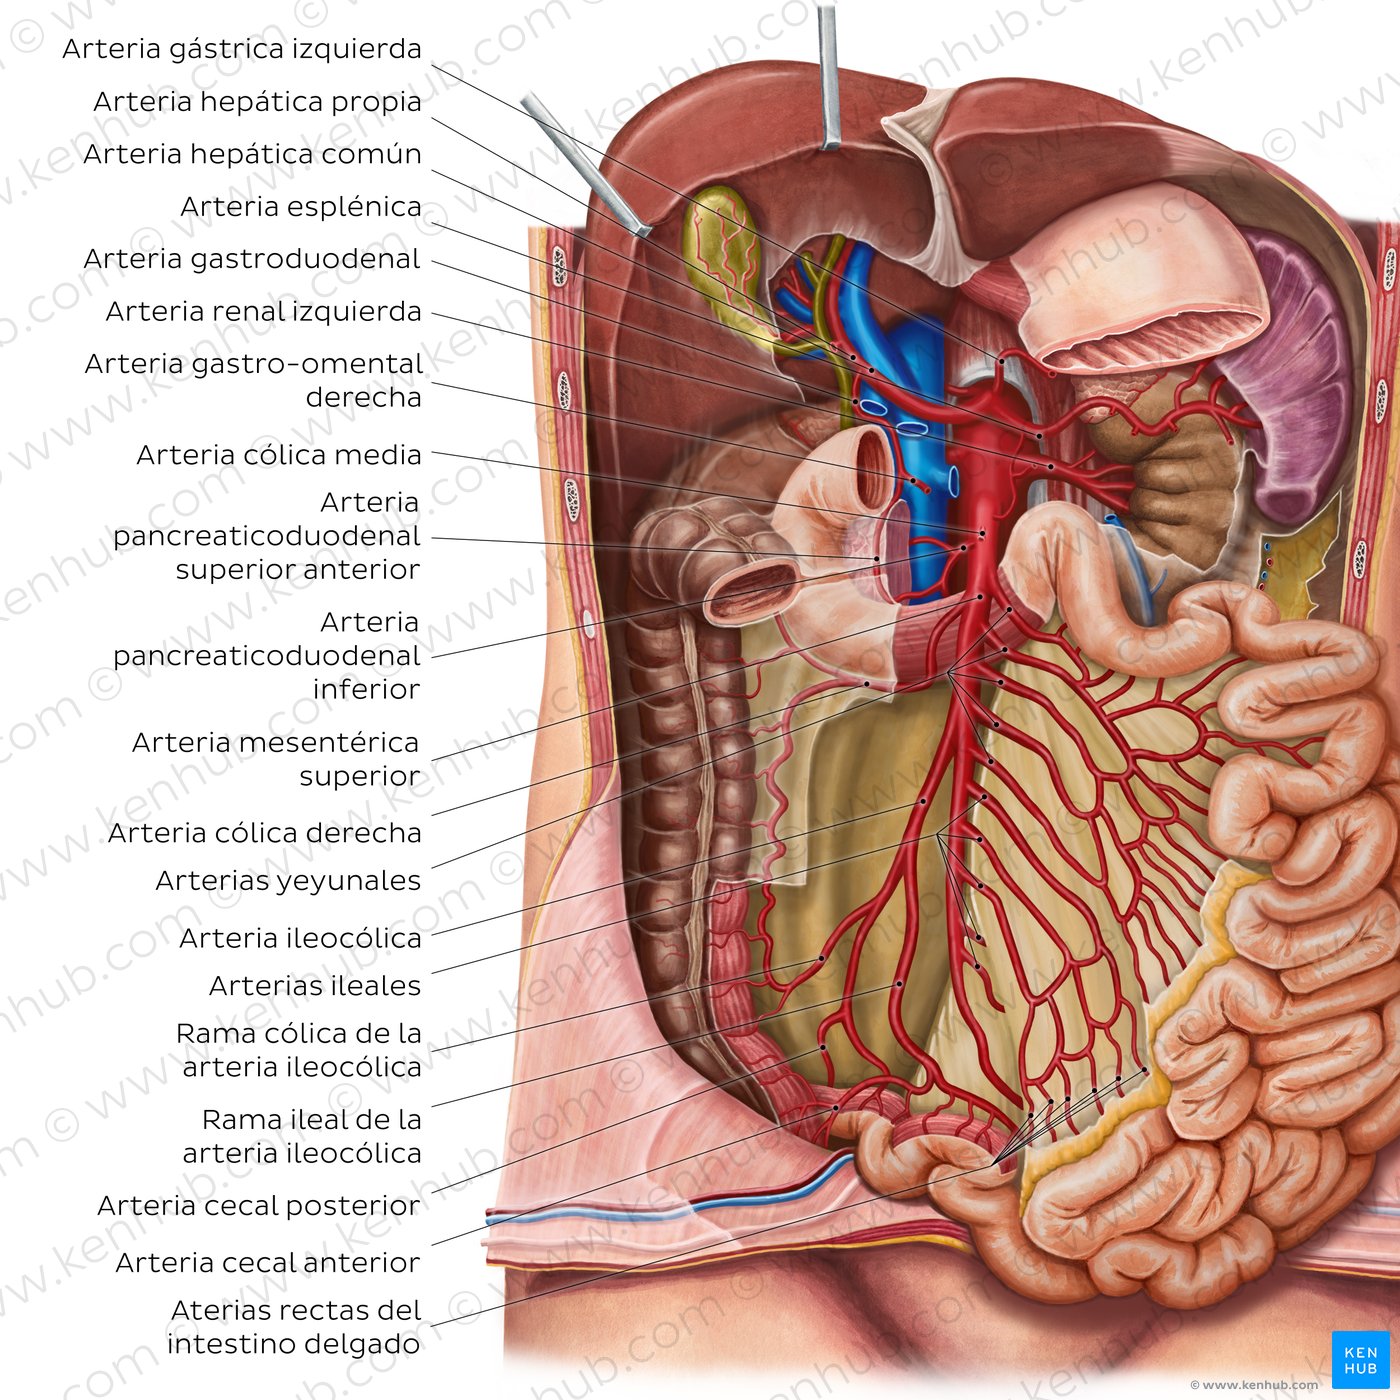 Arterias del intestino delgado